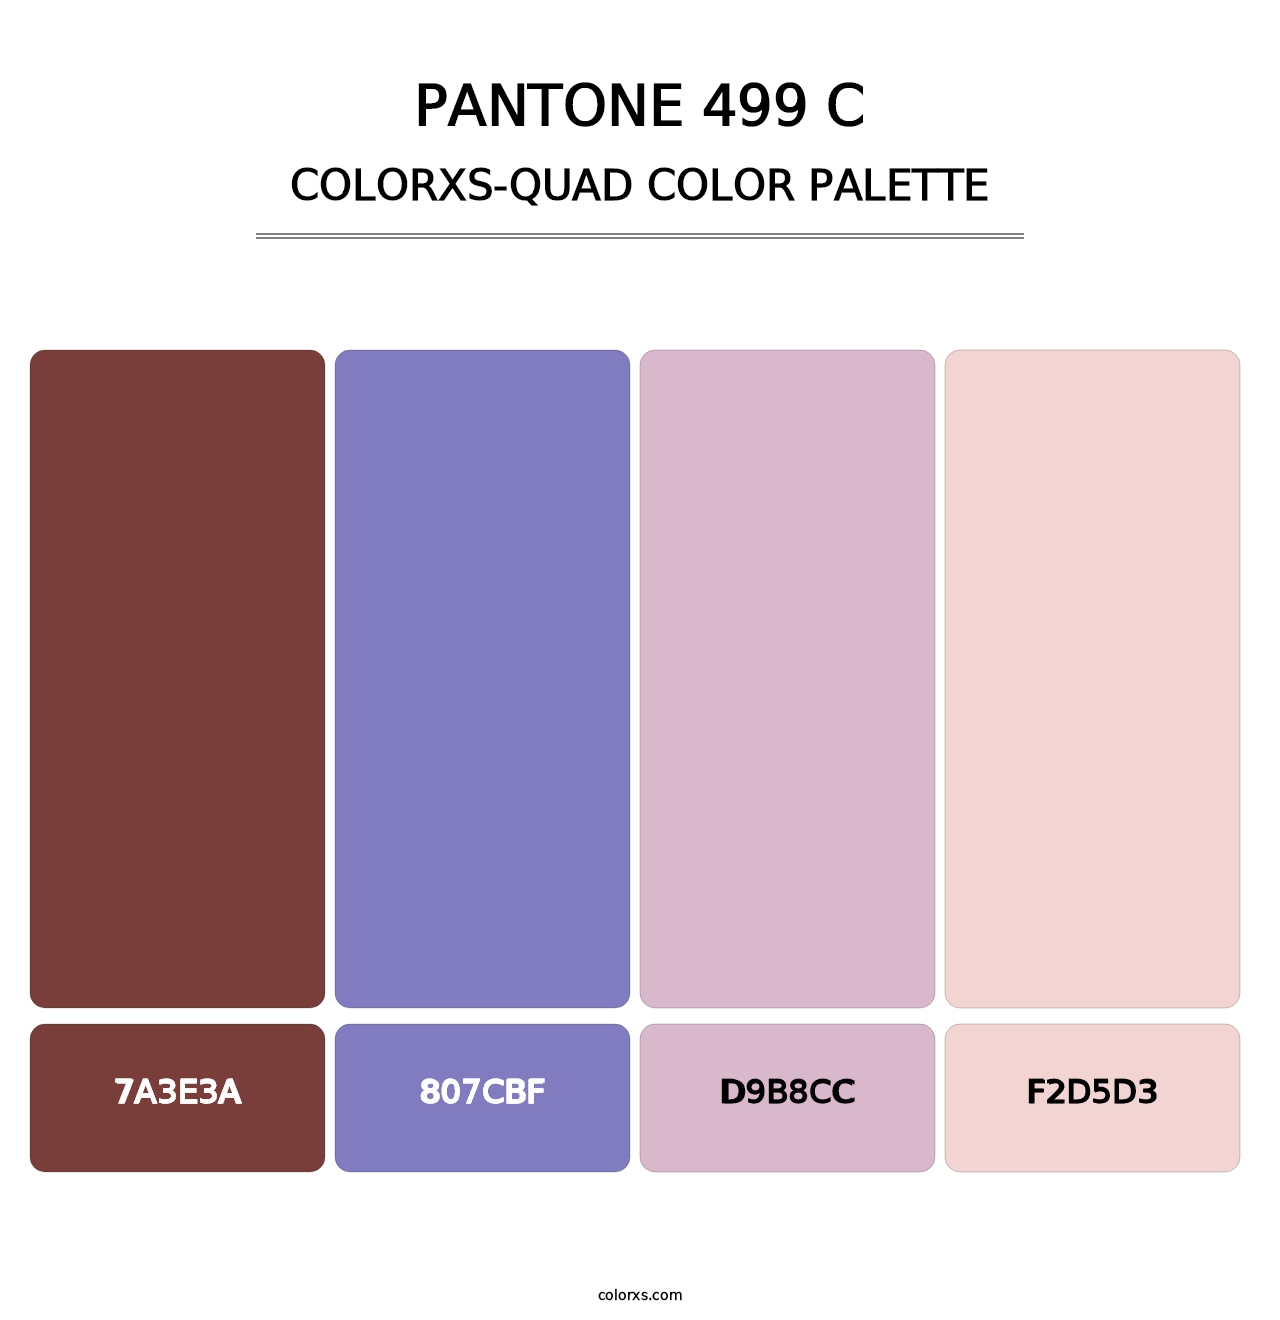 PANTONE 499 C - Colorxs Quad Palette